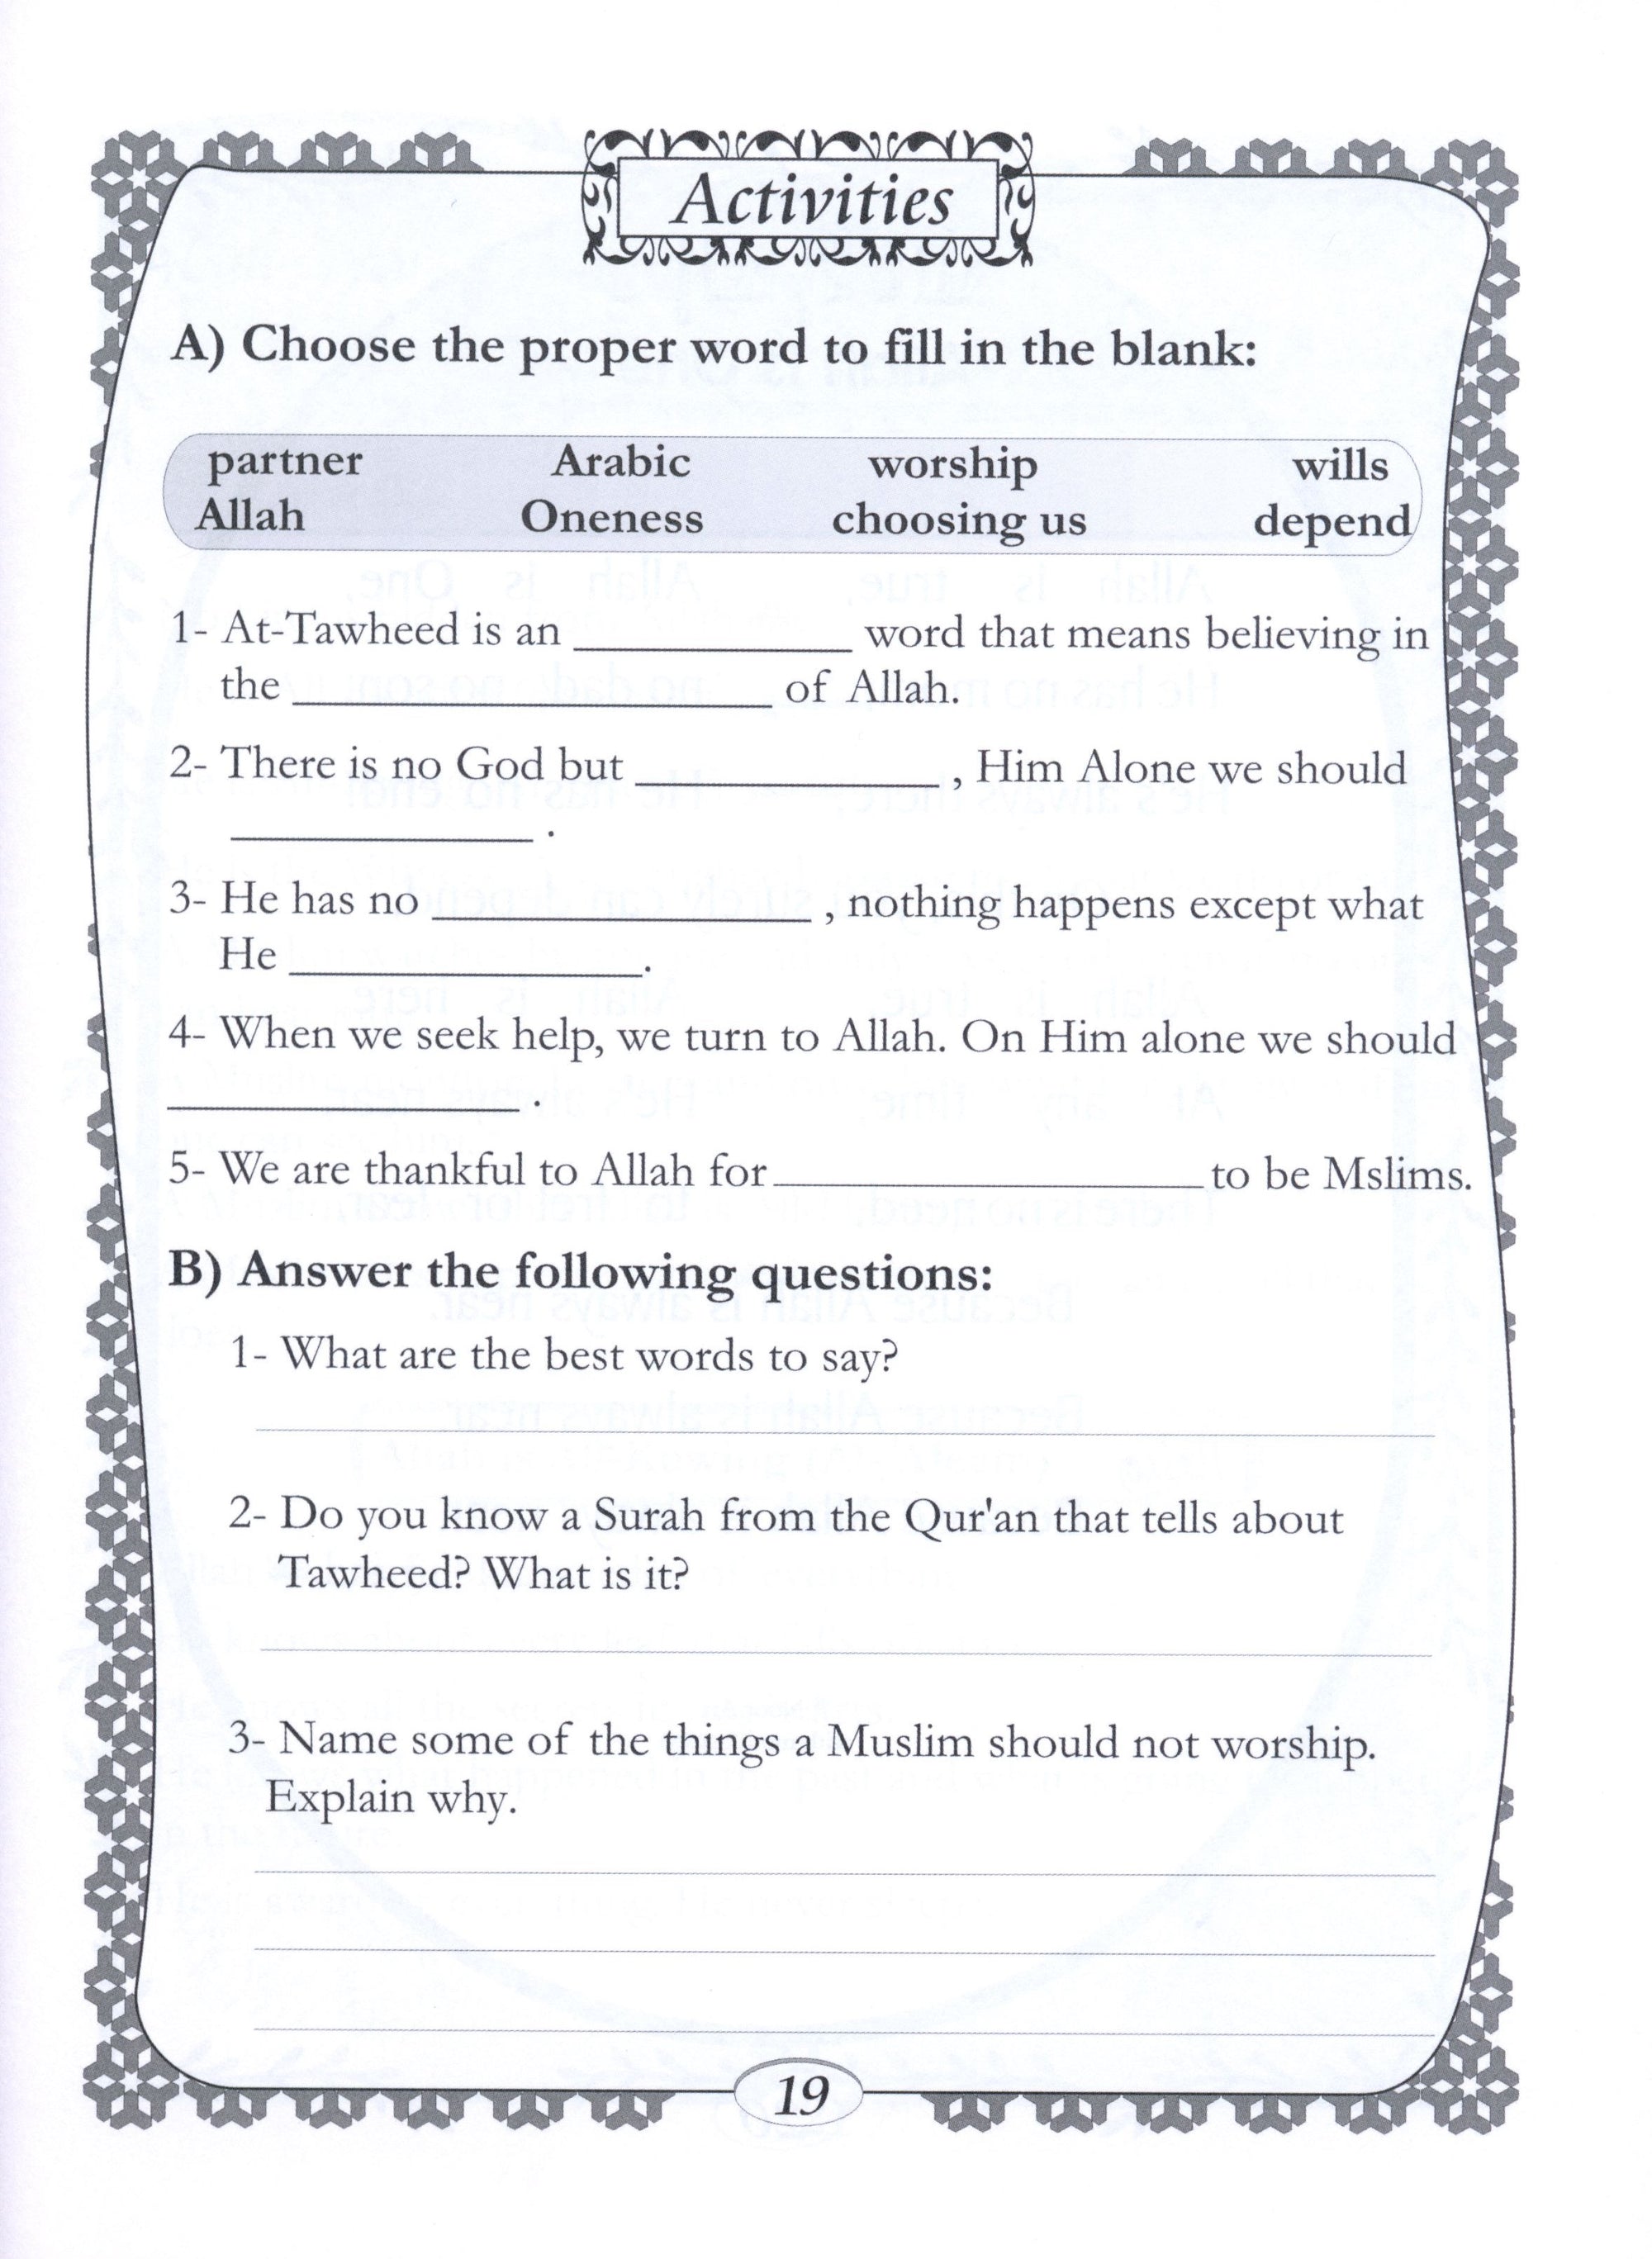 Islamic Education - The Right Path Level 3 التربية الإسلامية